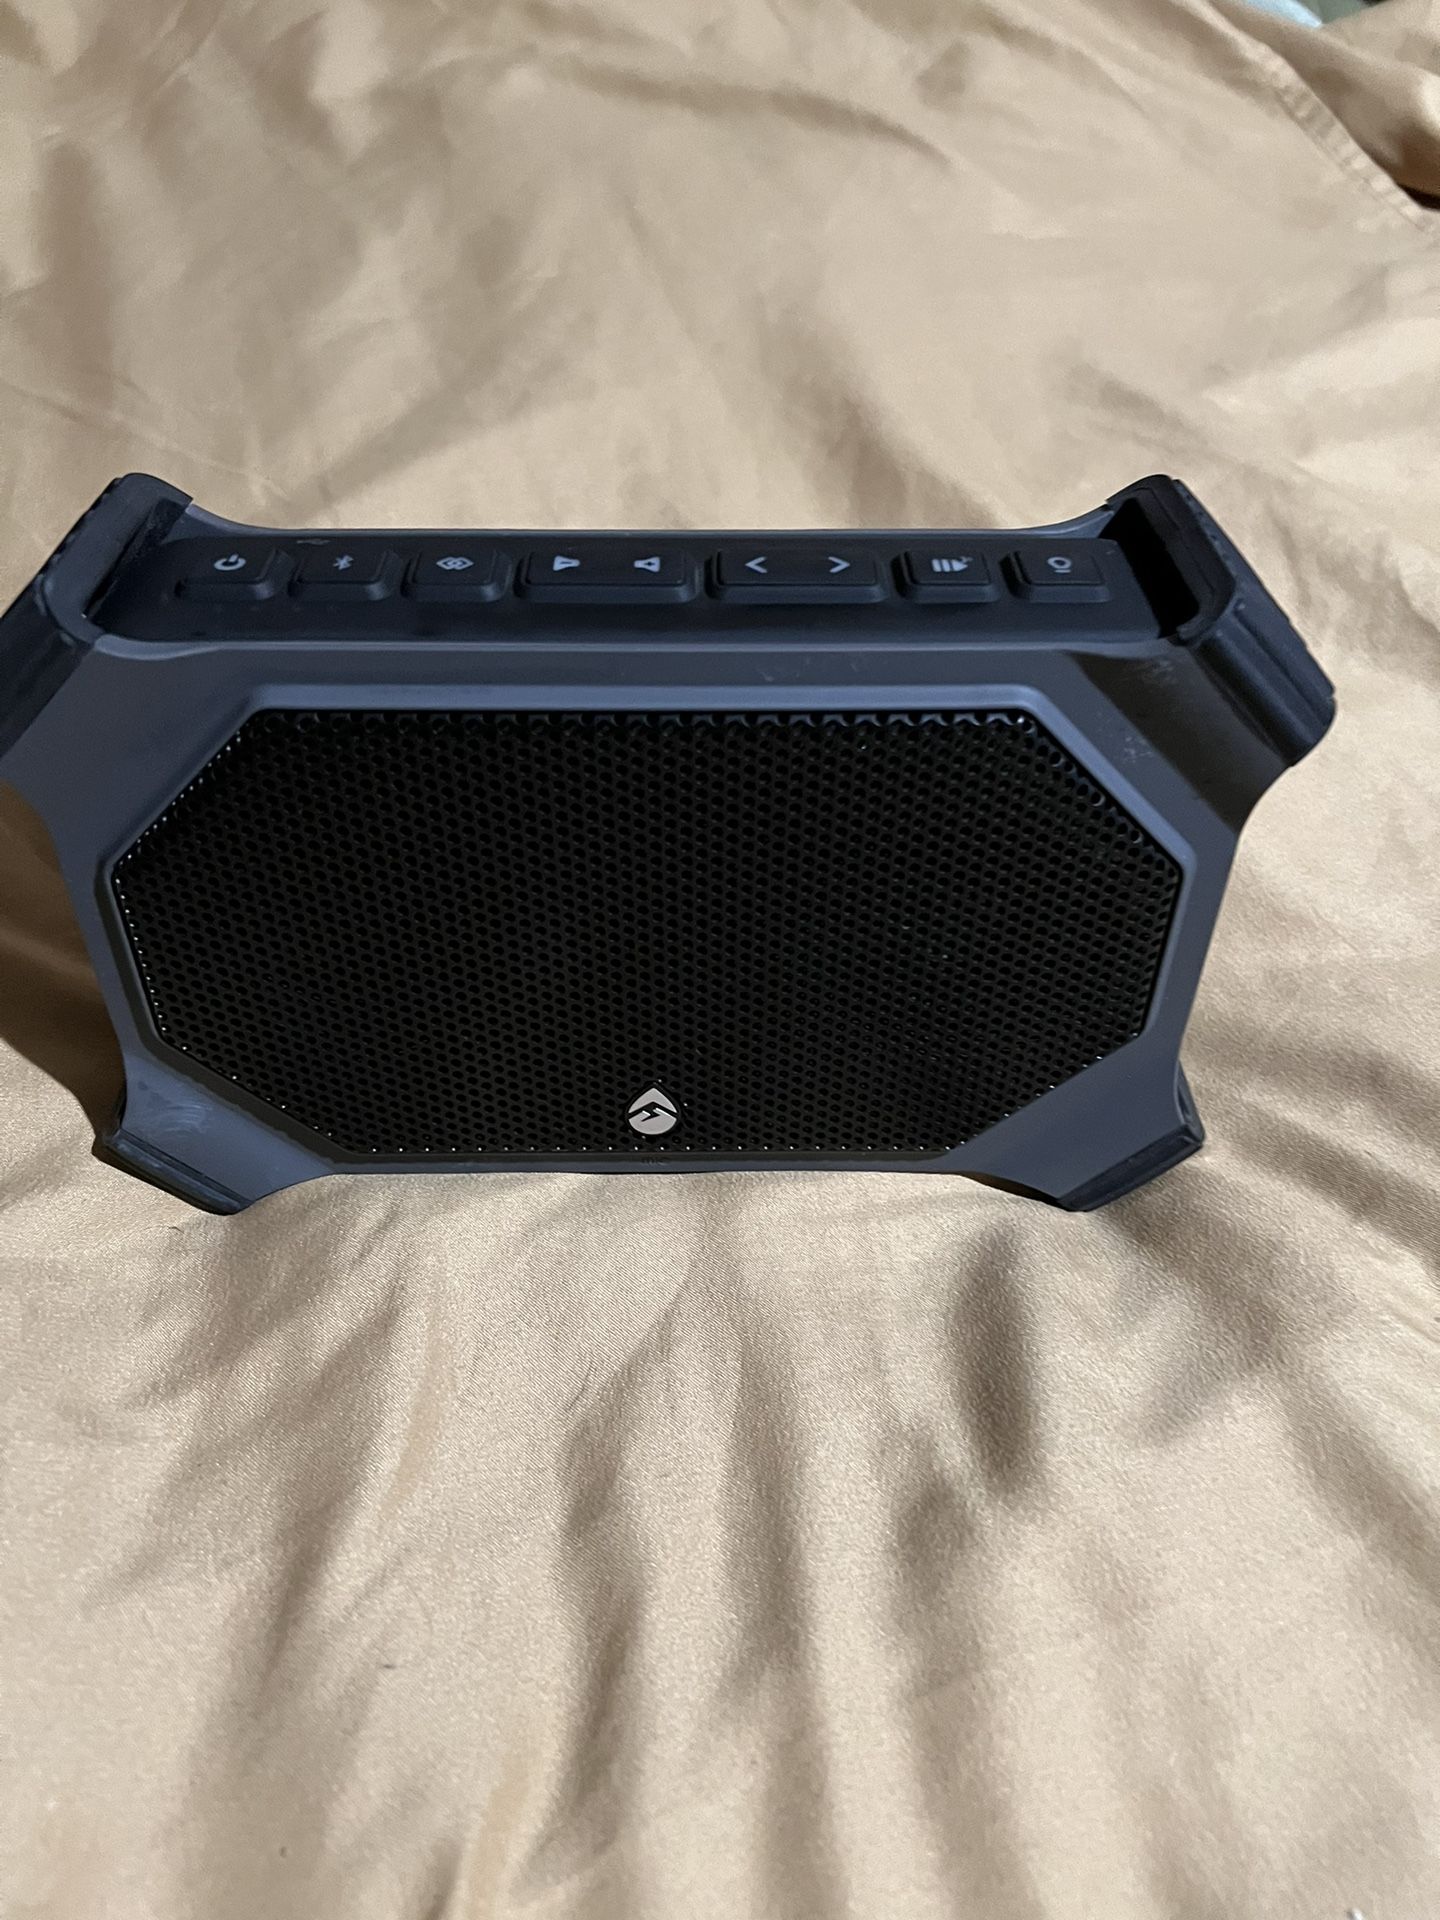 ECOGEAR Bluetooth speaker $40